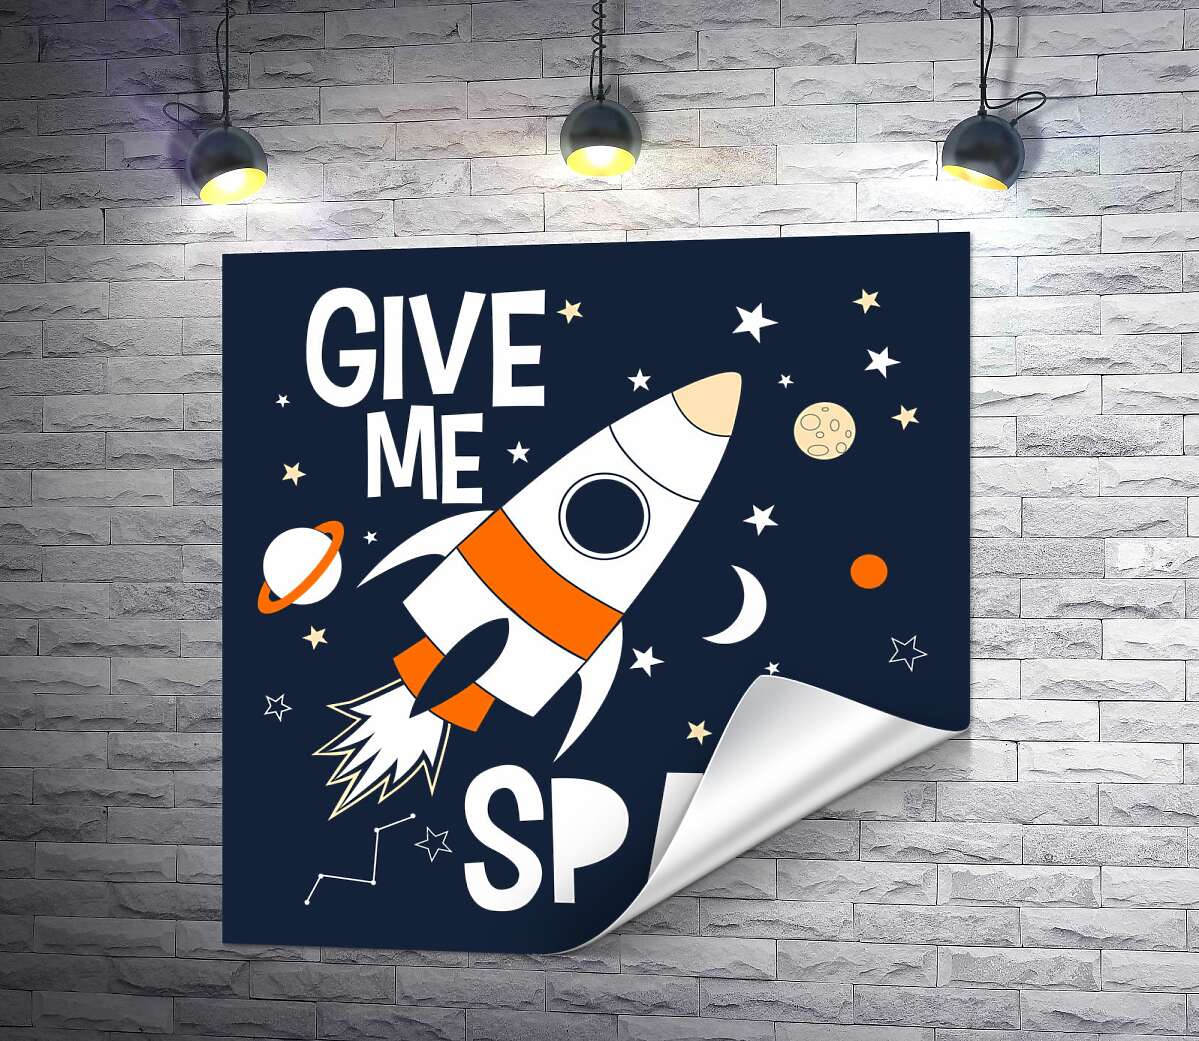 печать Ракета пролетает между словами "give me space"